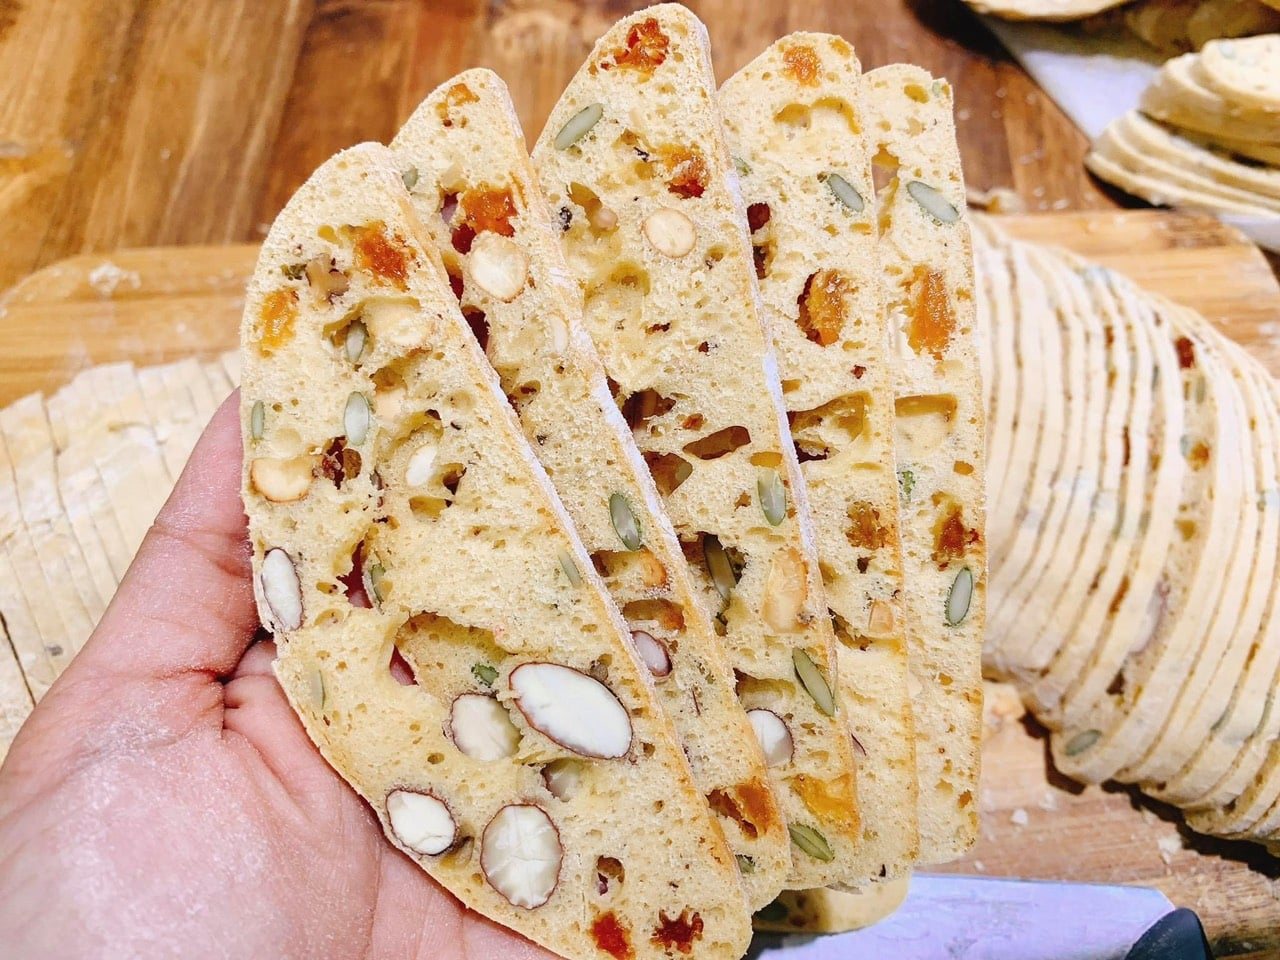 Bánh biscotti nguyên cám ROM Food  MIX VỊ 200G gồm 7 loại hạt mứt - được làm hoàn toàn bằng bột nguyên cám, mix cùng các loại hạt cao cấp và bổ dưỡng, hoàn hảo cho những người đang có kế hoạch ăn kiêng, giảm cân